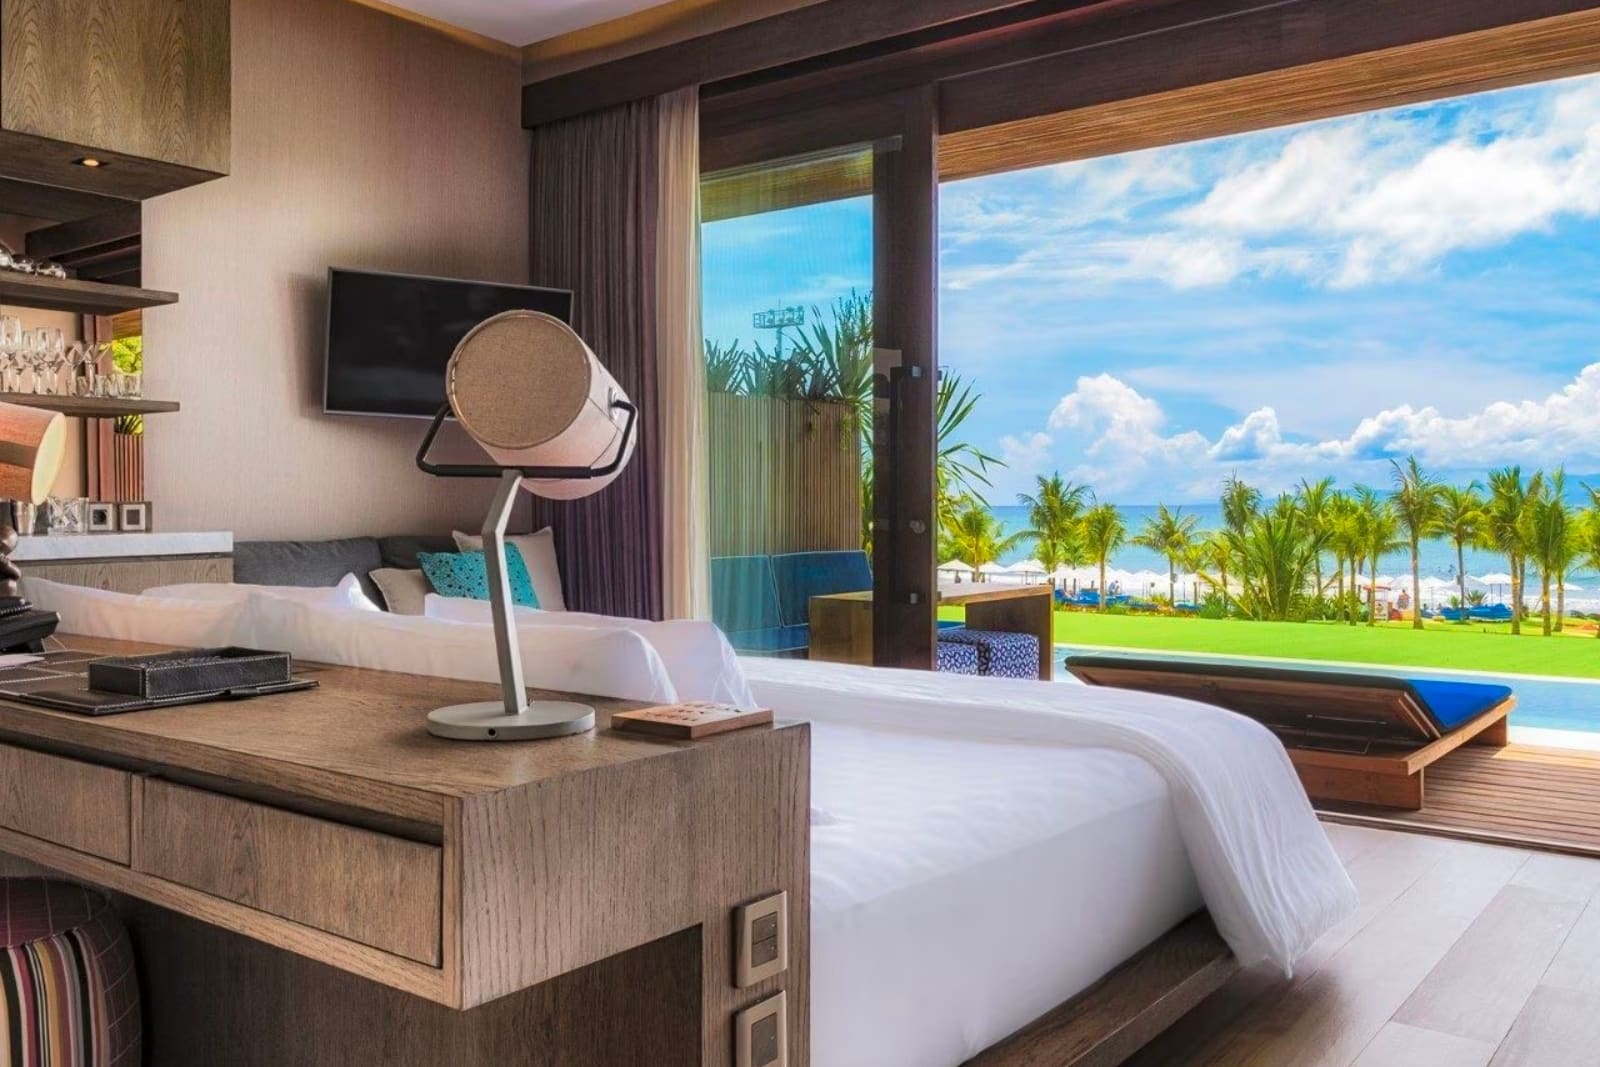 Bedroom views of seaside in Bali resort.